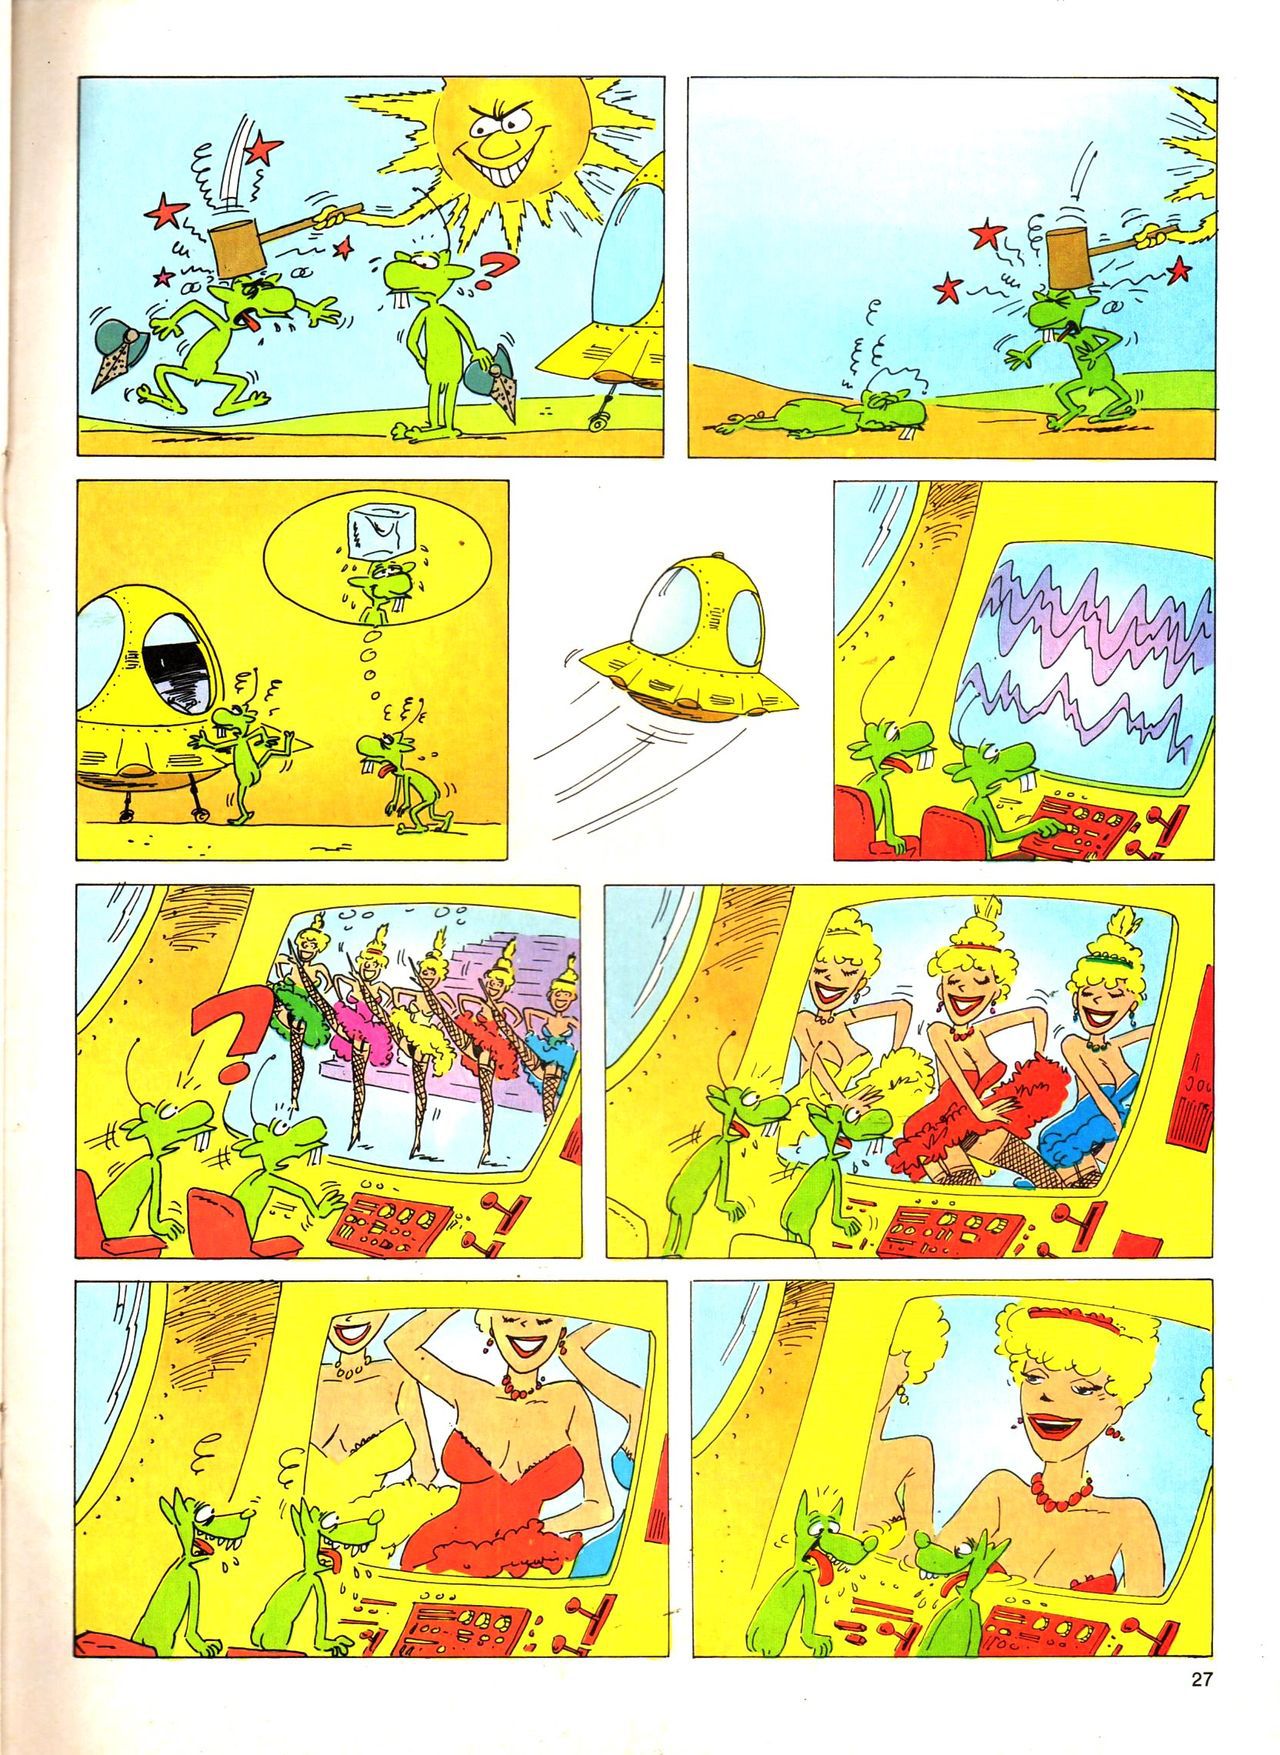 Het Is Groen En Het.. - 04 - Mag Ik Die Ballen.. OH, PARDON! (Dutch) Een oude humoristische serie van Pat Mallet 27